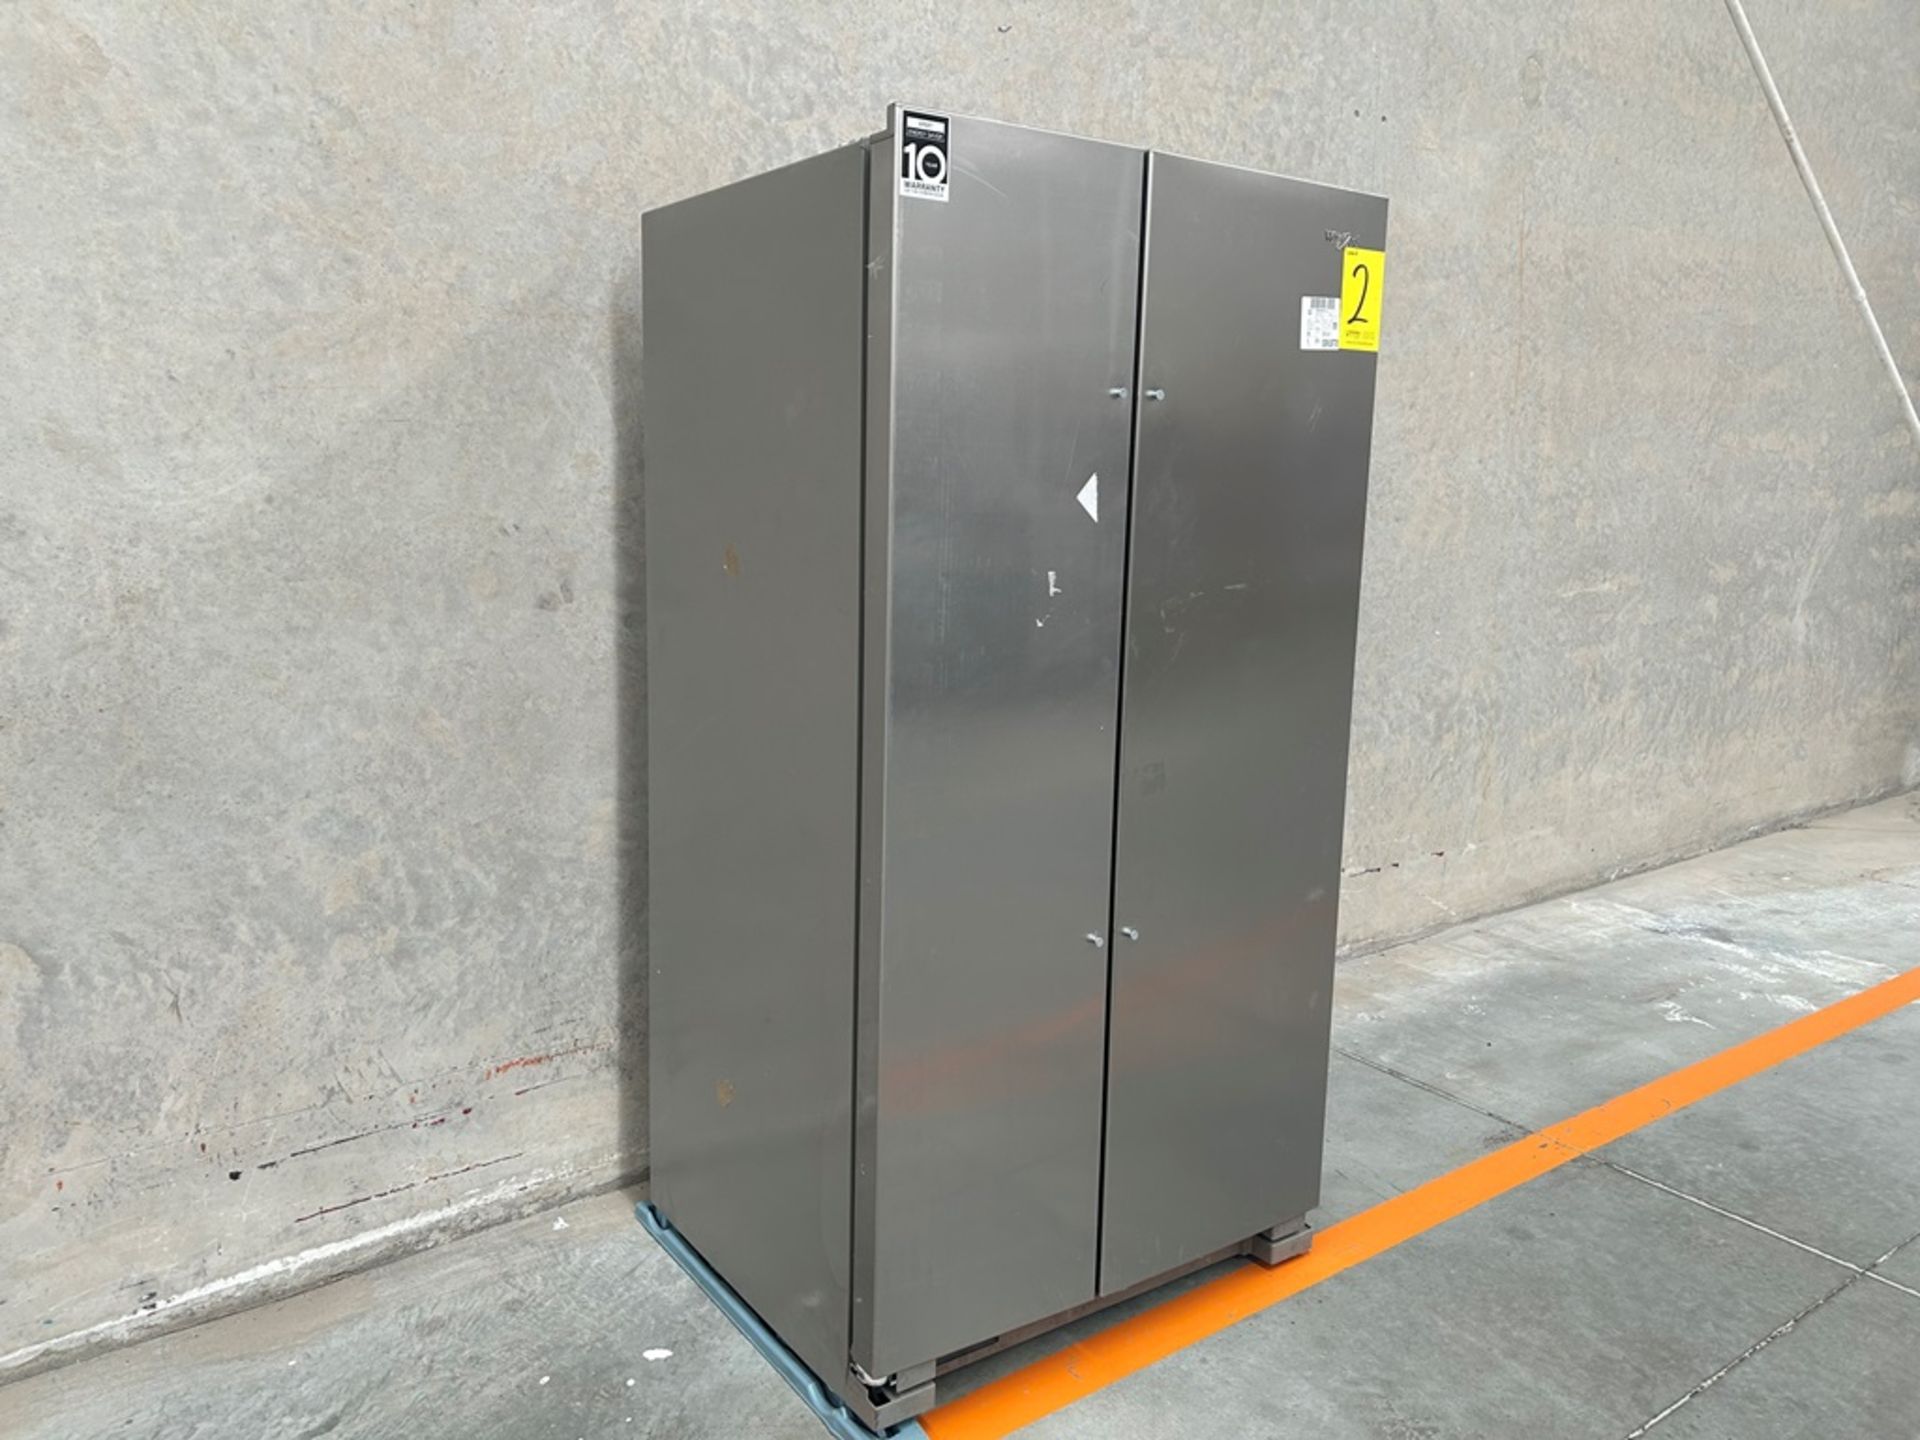 Refrigerador Marca WHIRLPOOL, Modelo WD5600S, Serie 813311, Color GRIS (Equipo de Devolución) - Image 3 of 9